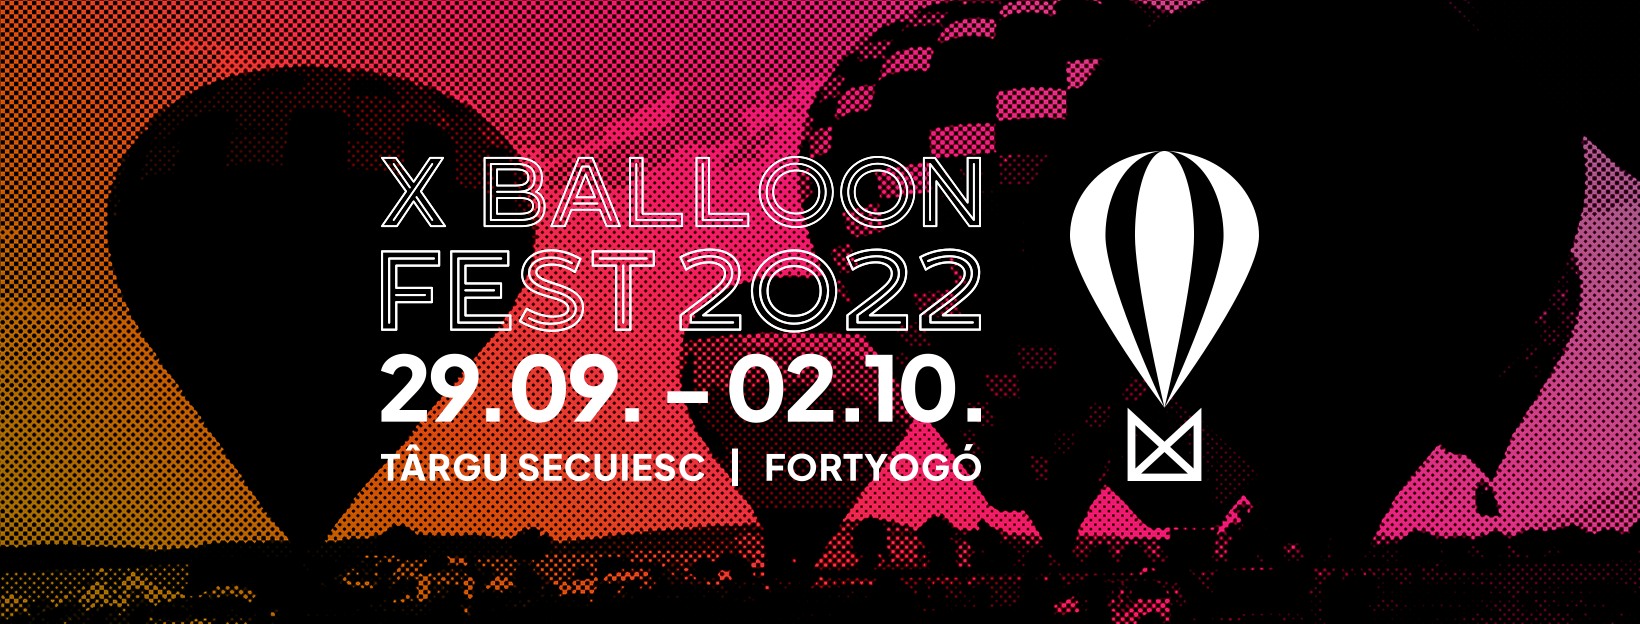 X Balloon Fest